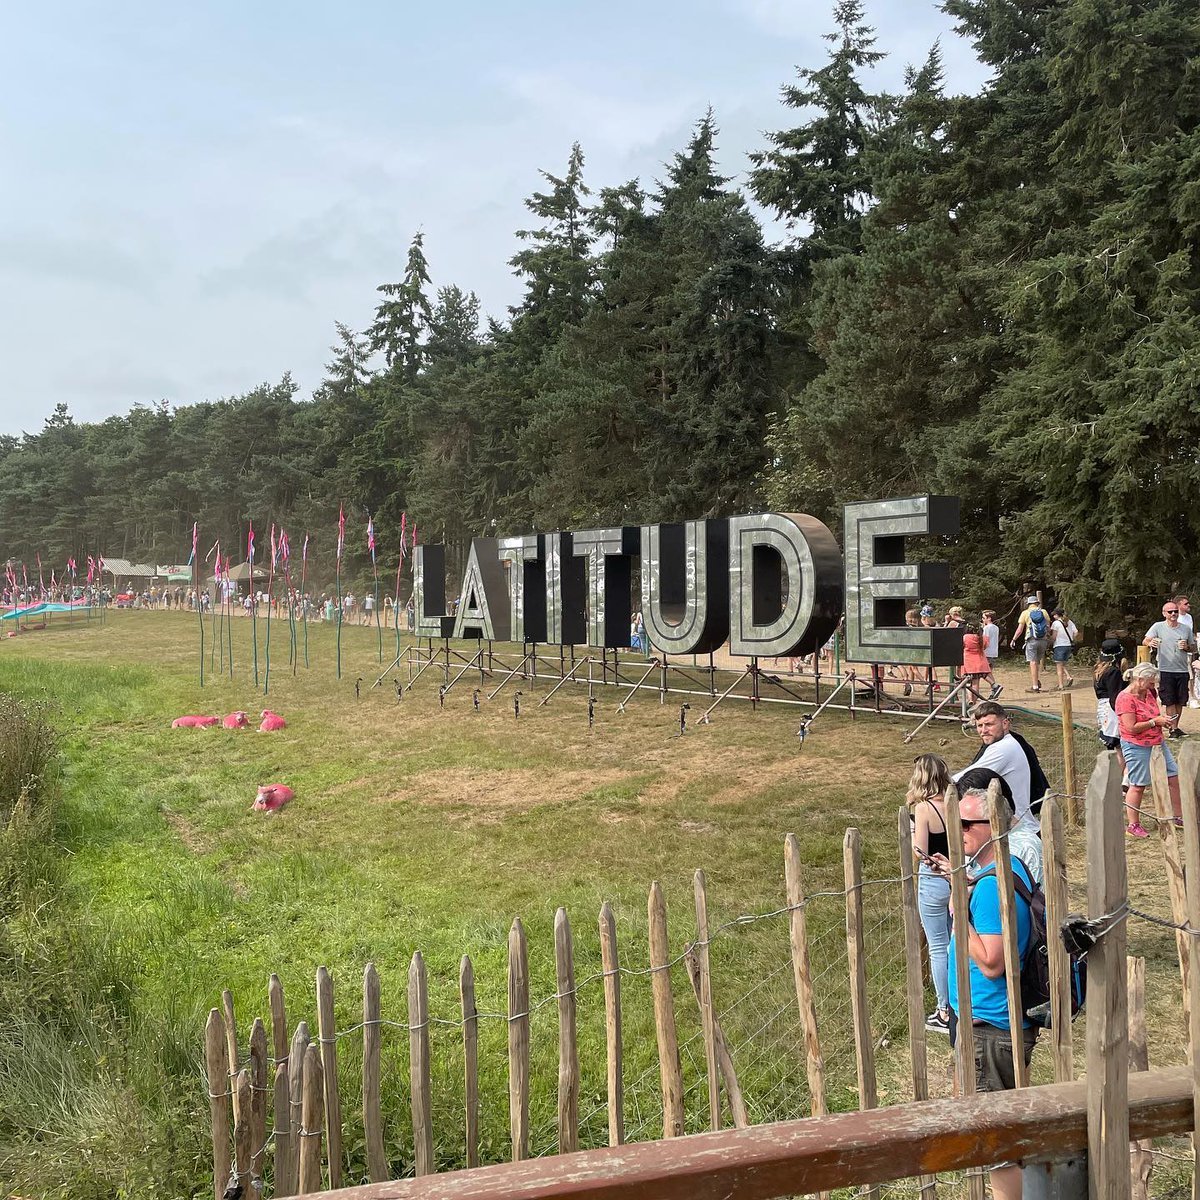 Excited @latitudefest ✌️
#chemicalbrotherslive #latitudefestival